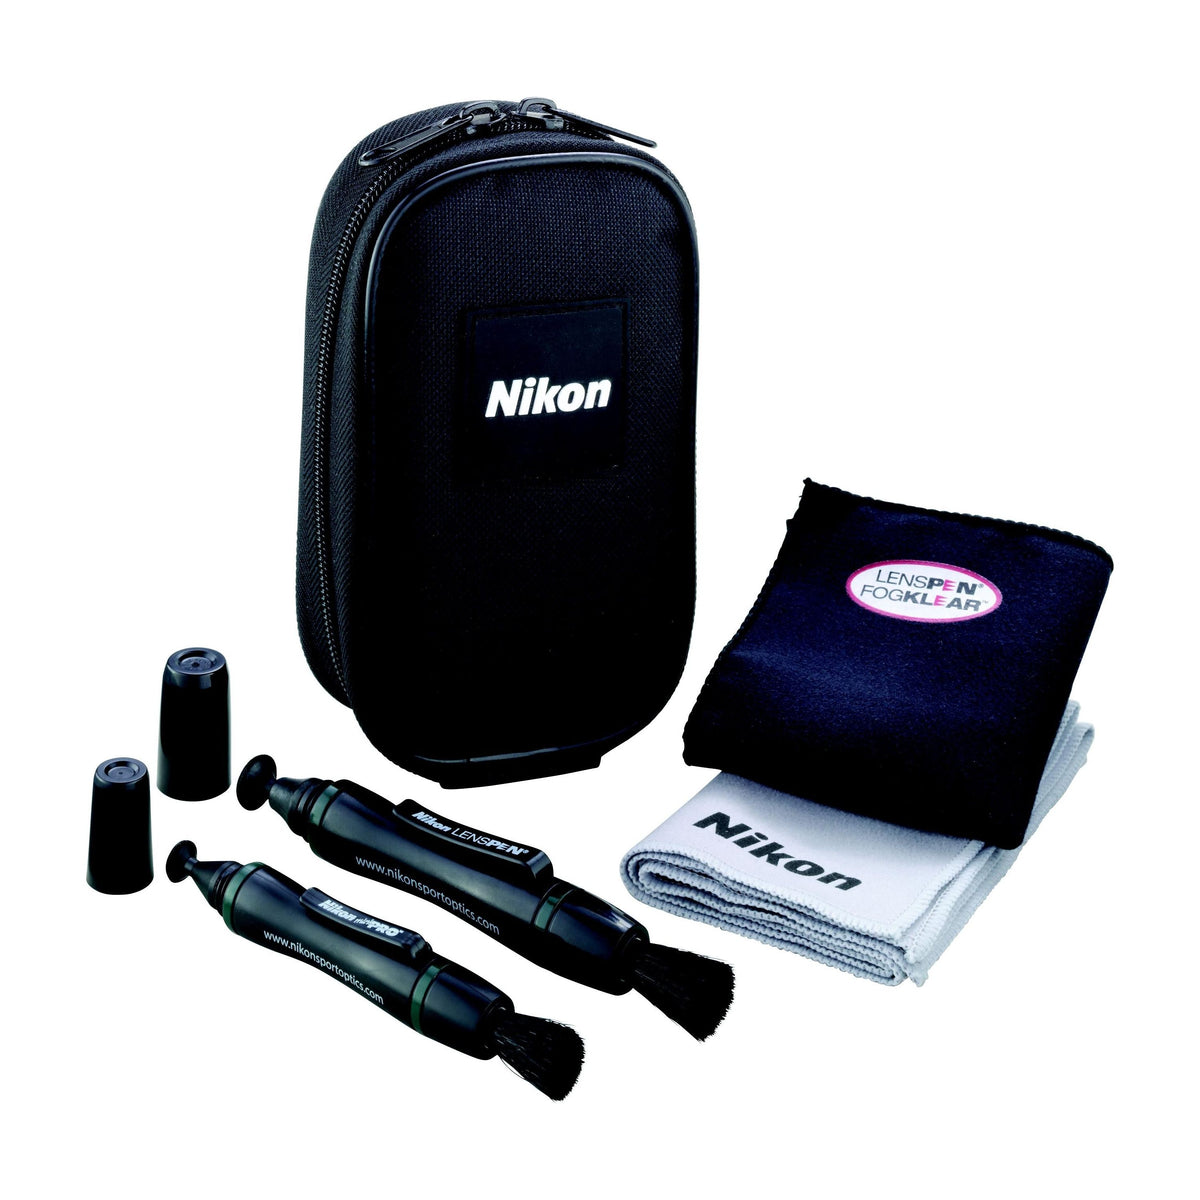 Nikon LensPen Pro Kit